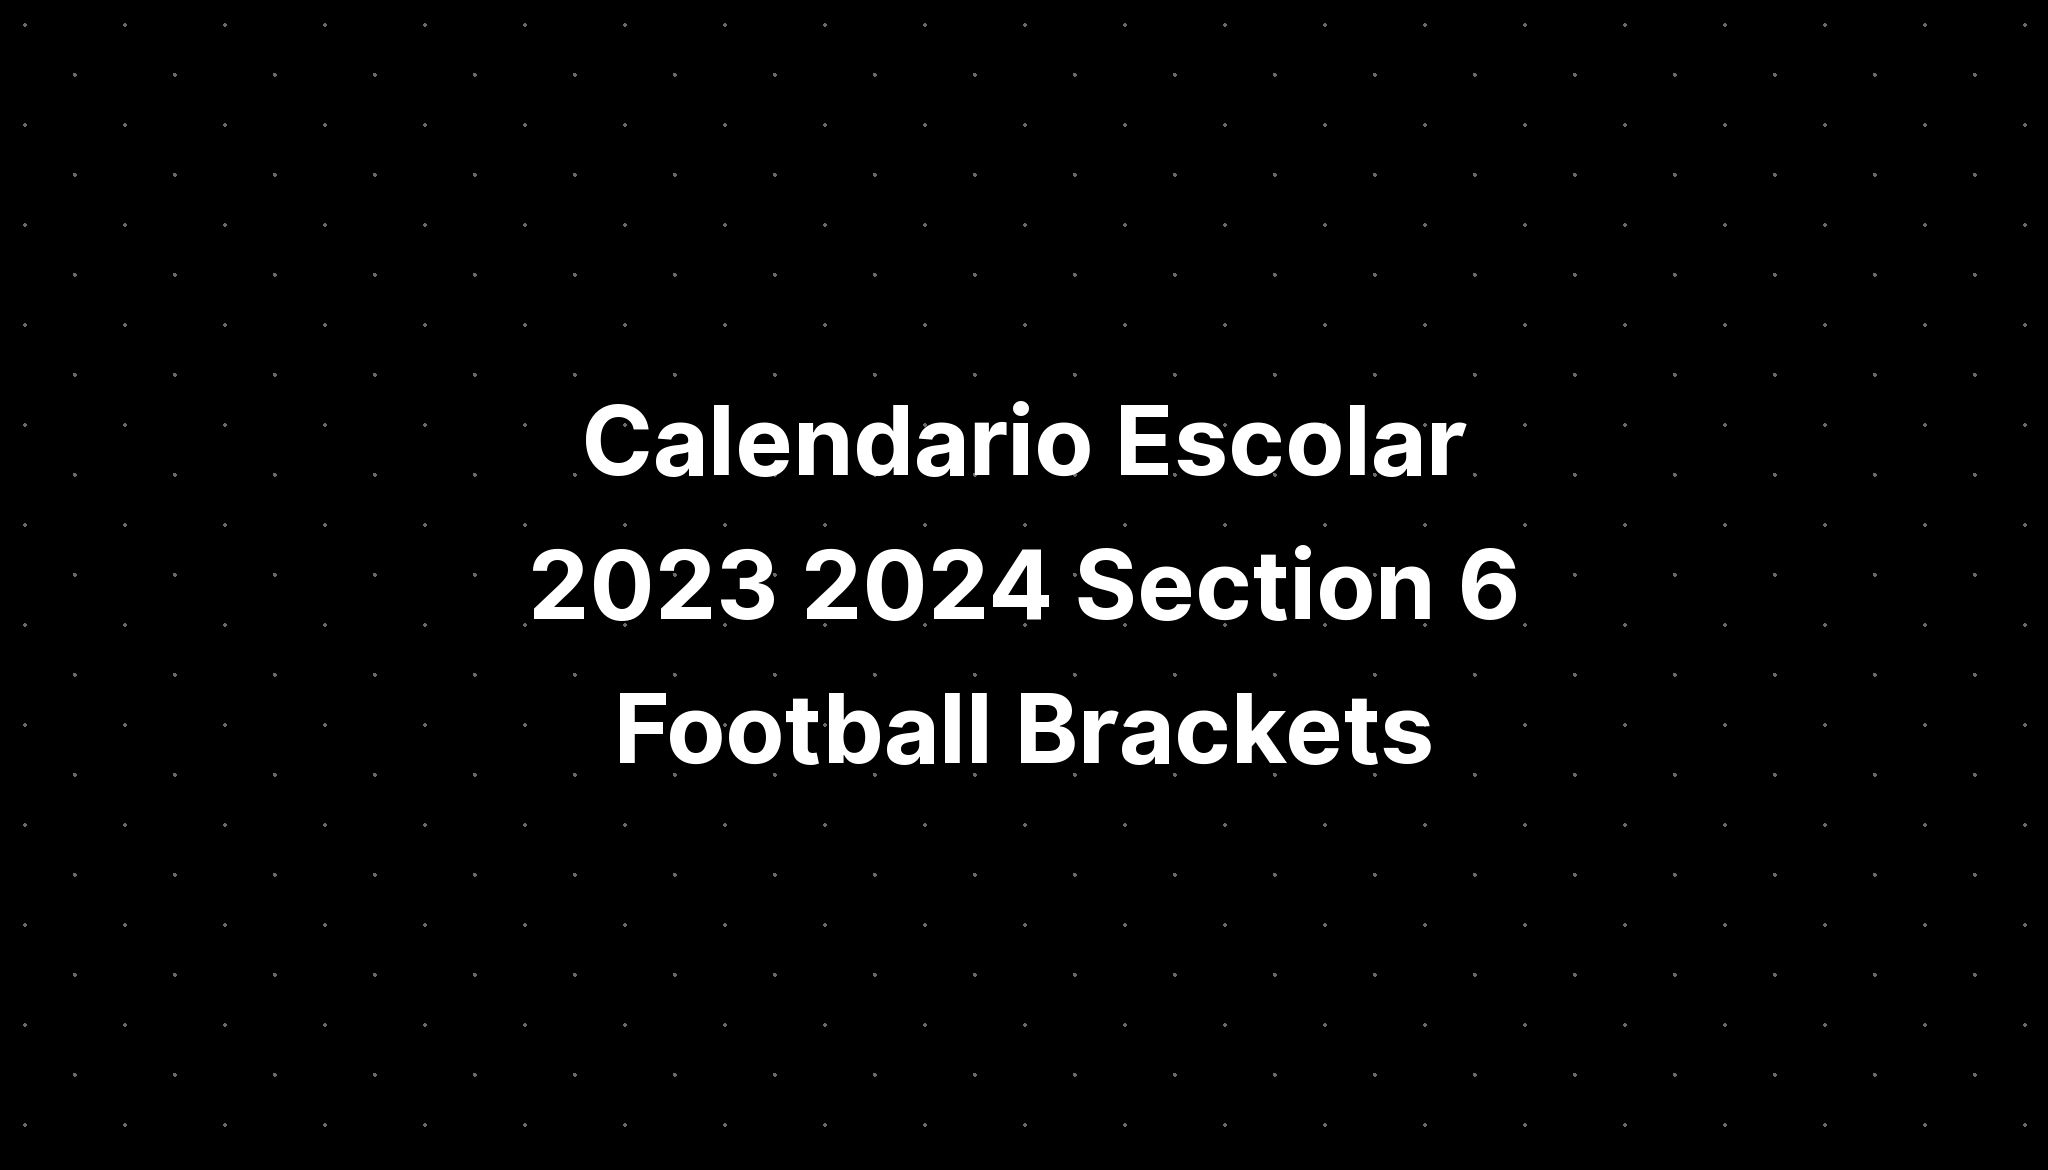 Calendario Escolar 2023 2024 Section 6 Football Brackets IMAGESEE